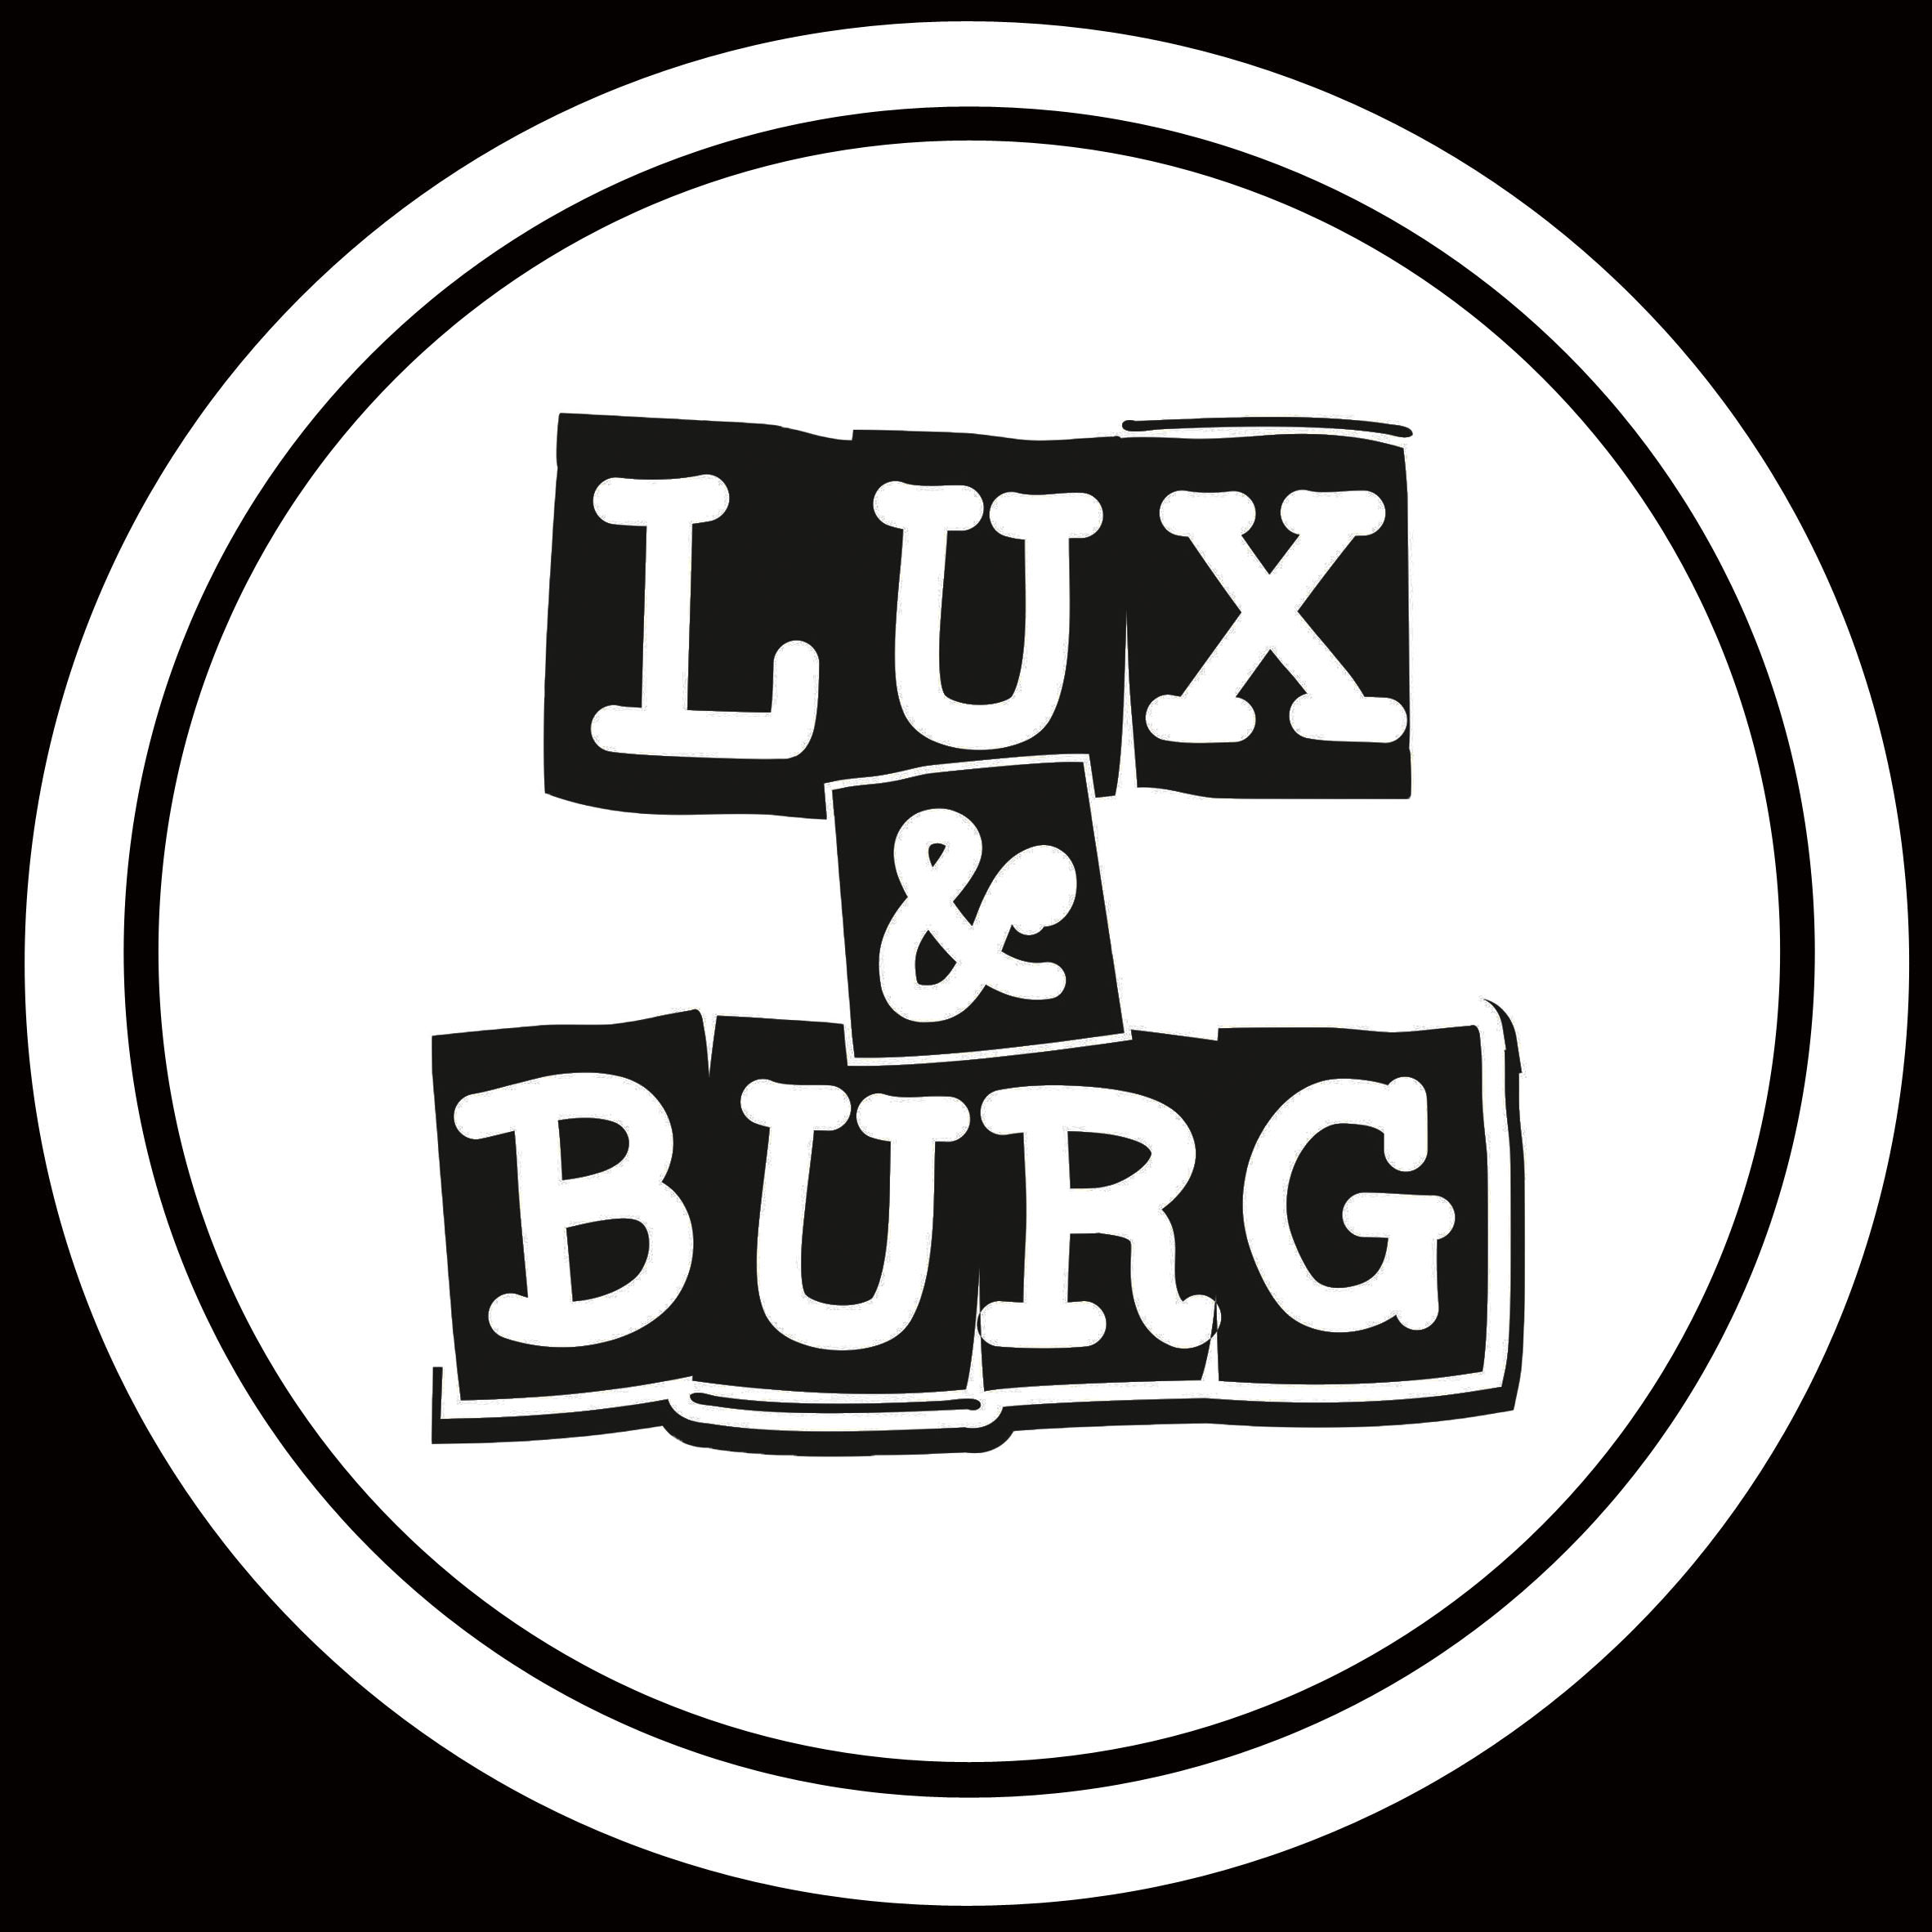 En este momento estás viendo Las Patatas Lux&Burg